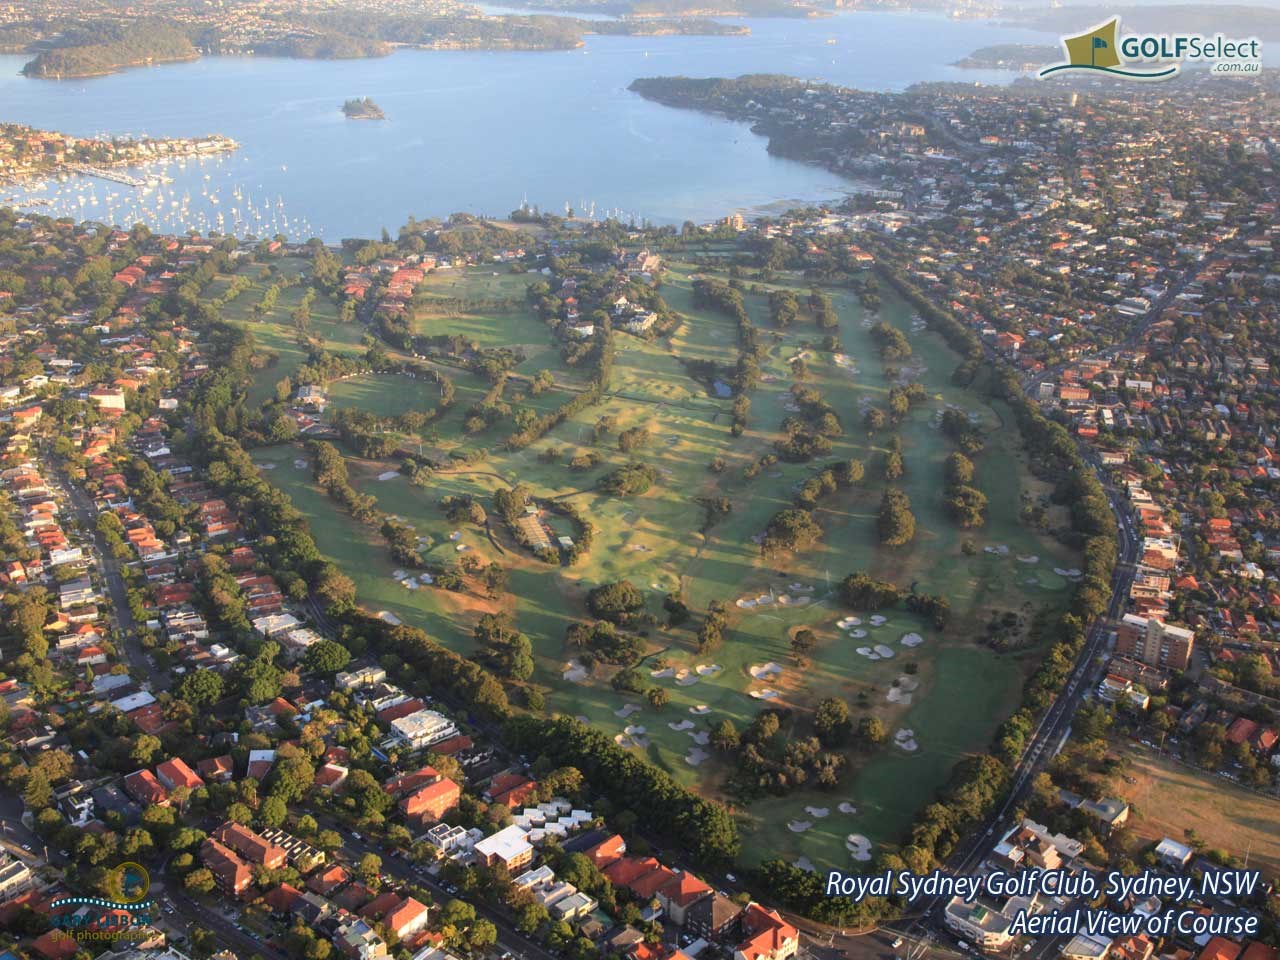 Royal Sydney Golf Club Aerial Image of Golf Course